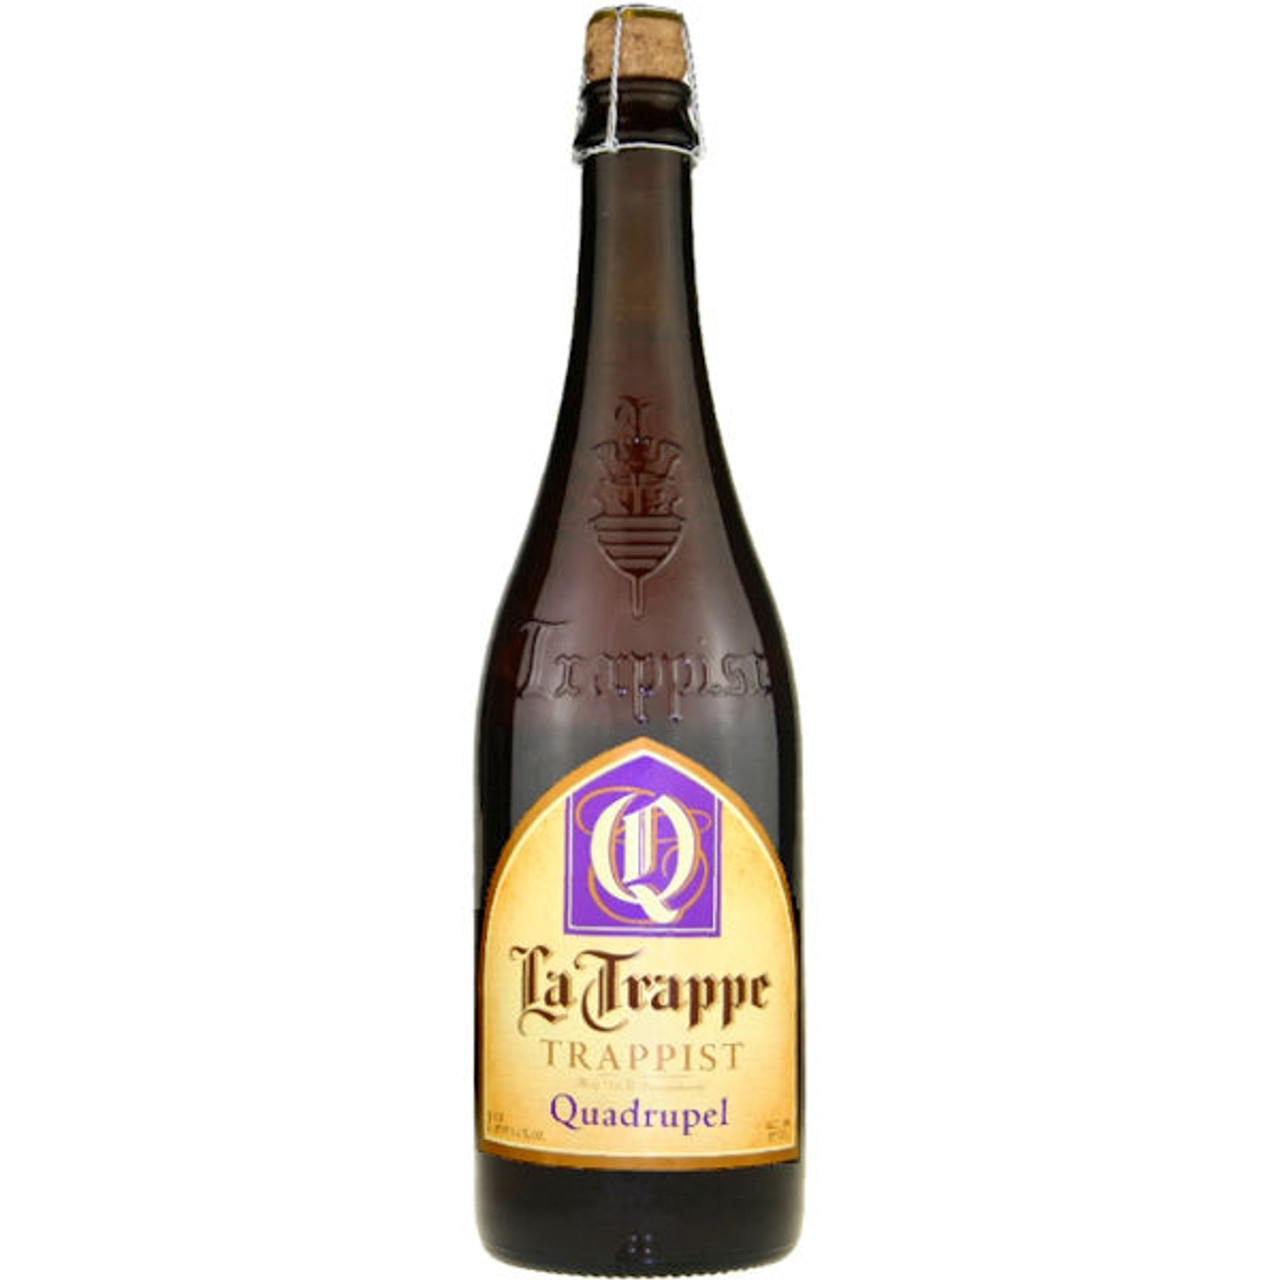 La Trappe "Quadrupel" Trappist Ale 750ml